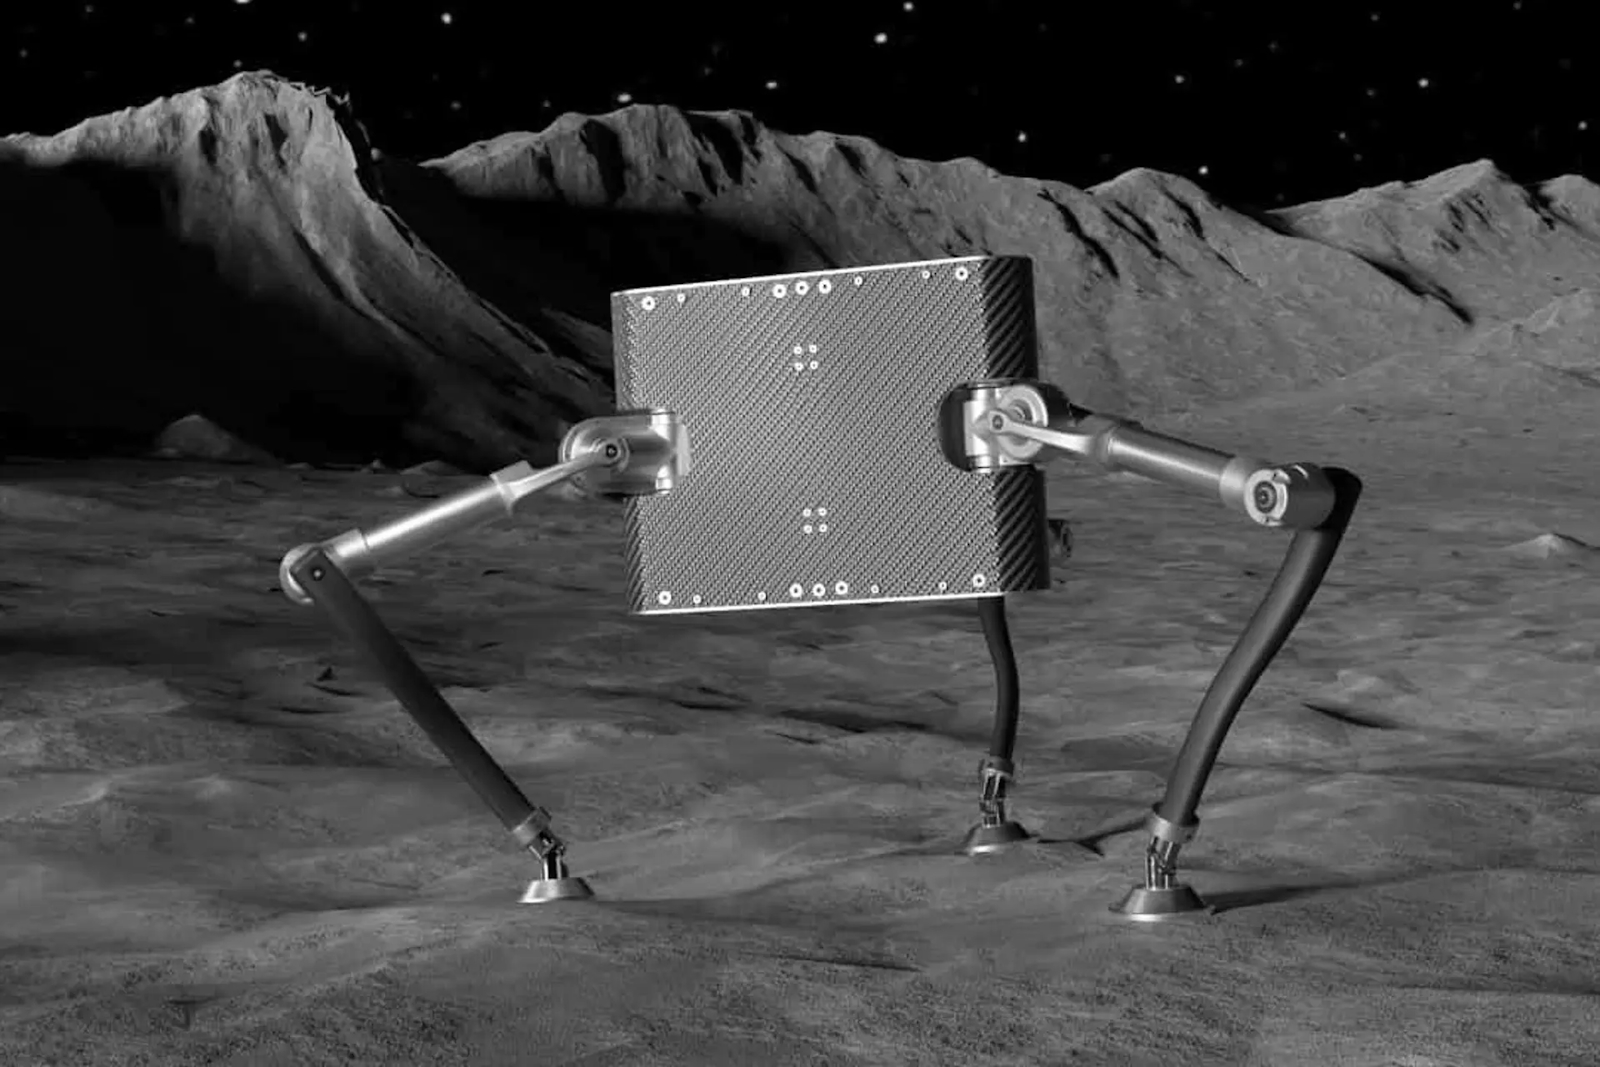 Le SpaceHopper, un drôle de robot criquet. © ETH Zurich